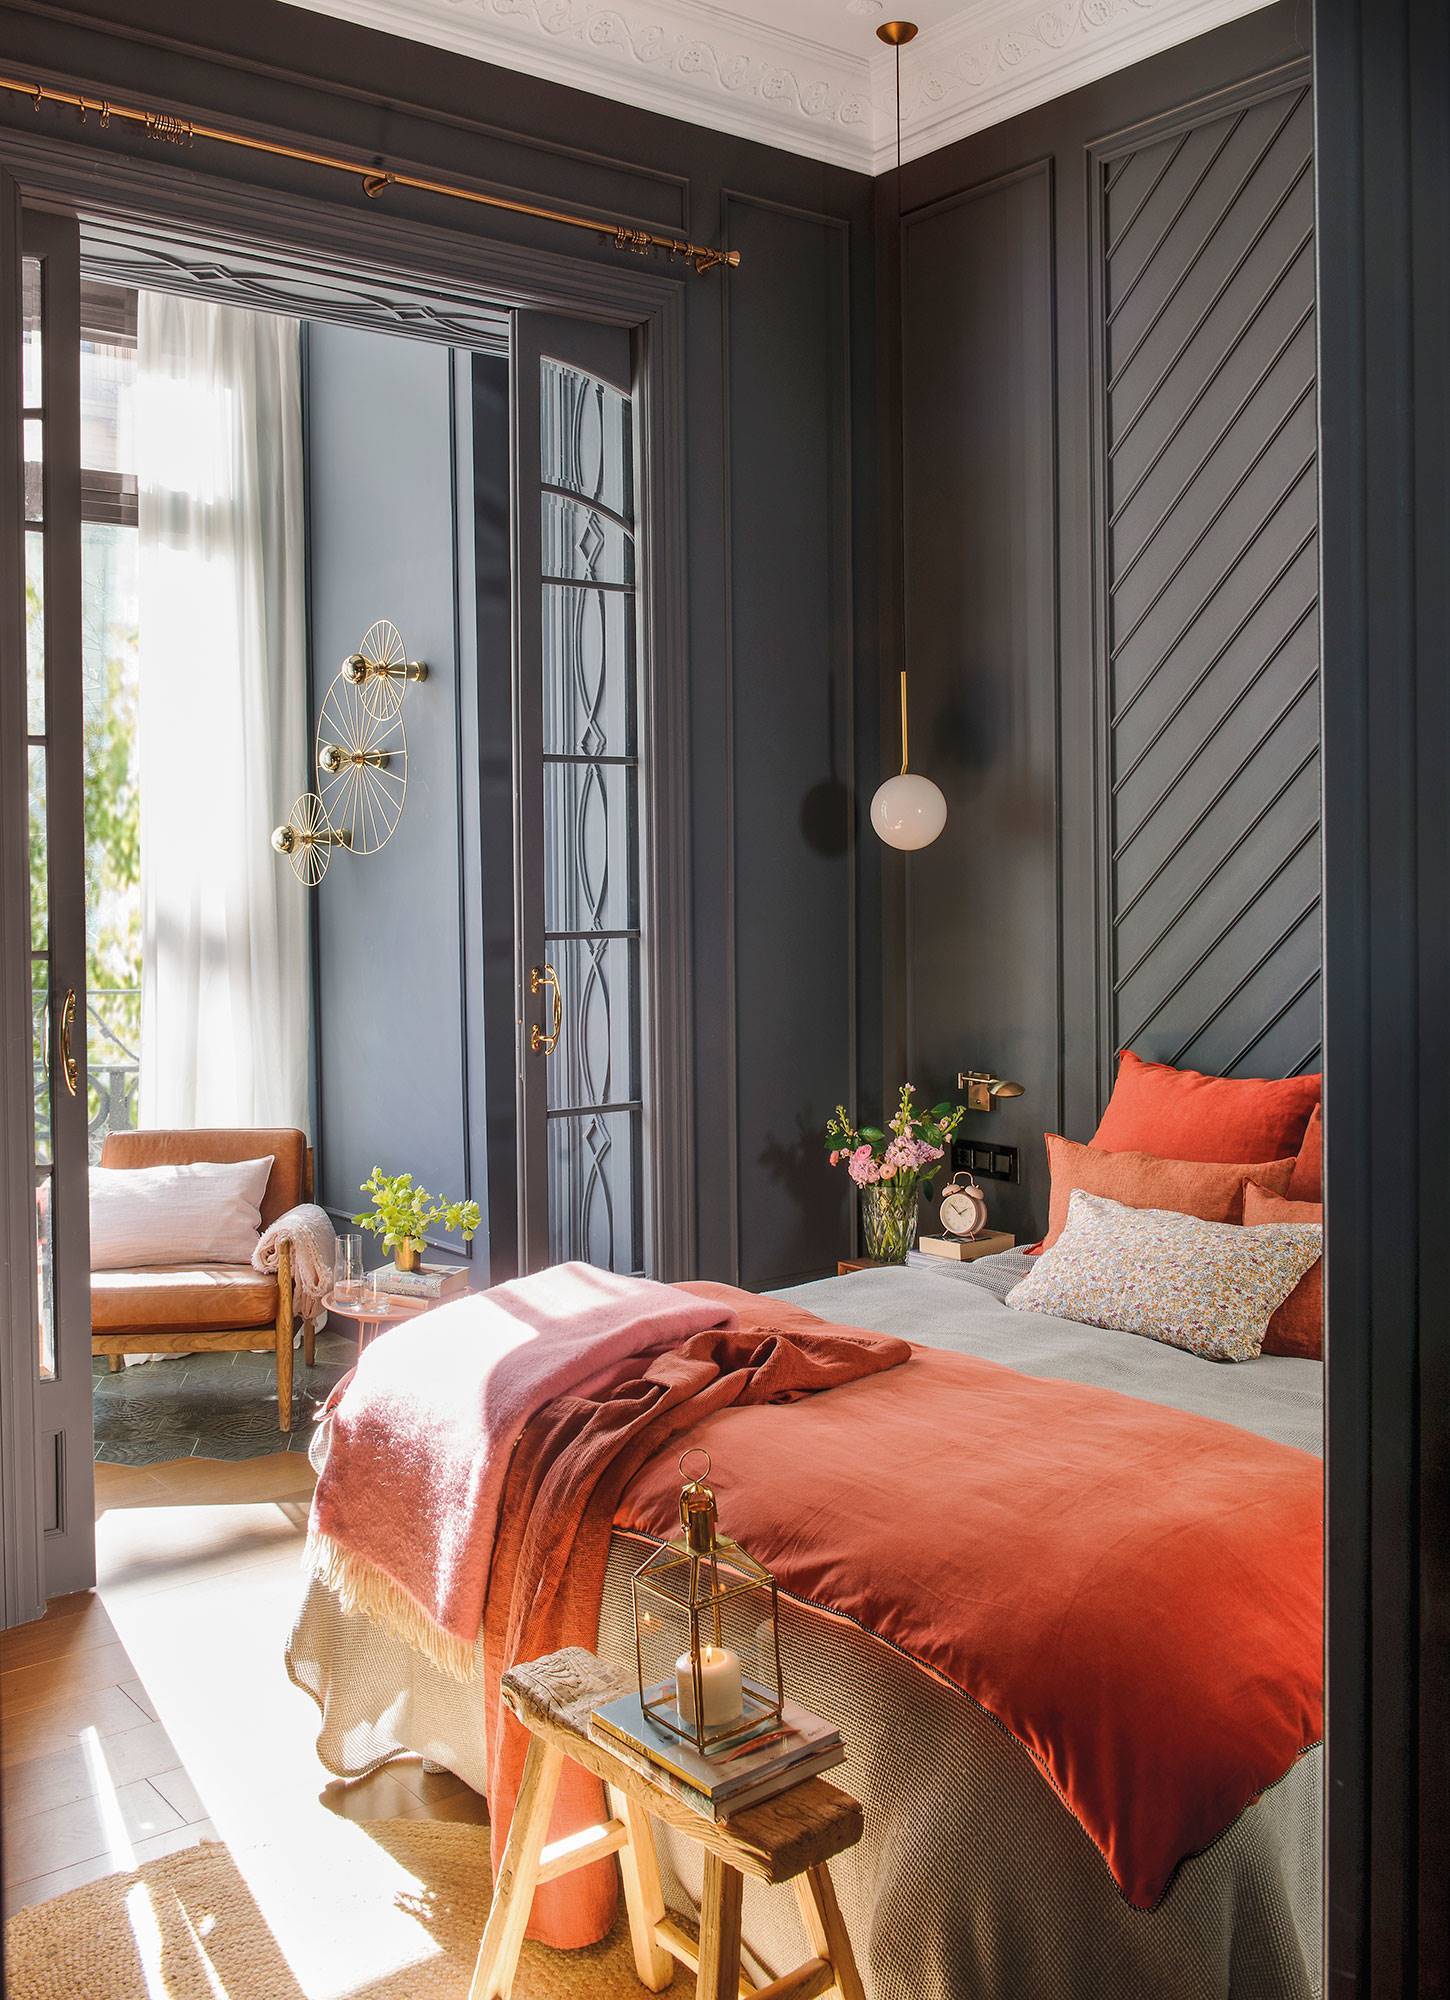 Dormitorio moderno con molduras grises en la pared y ropa de cama naranja 00492057 5d064629 1450x2000